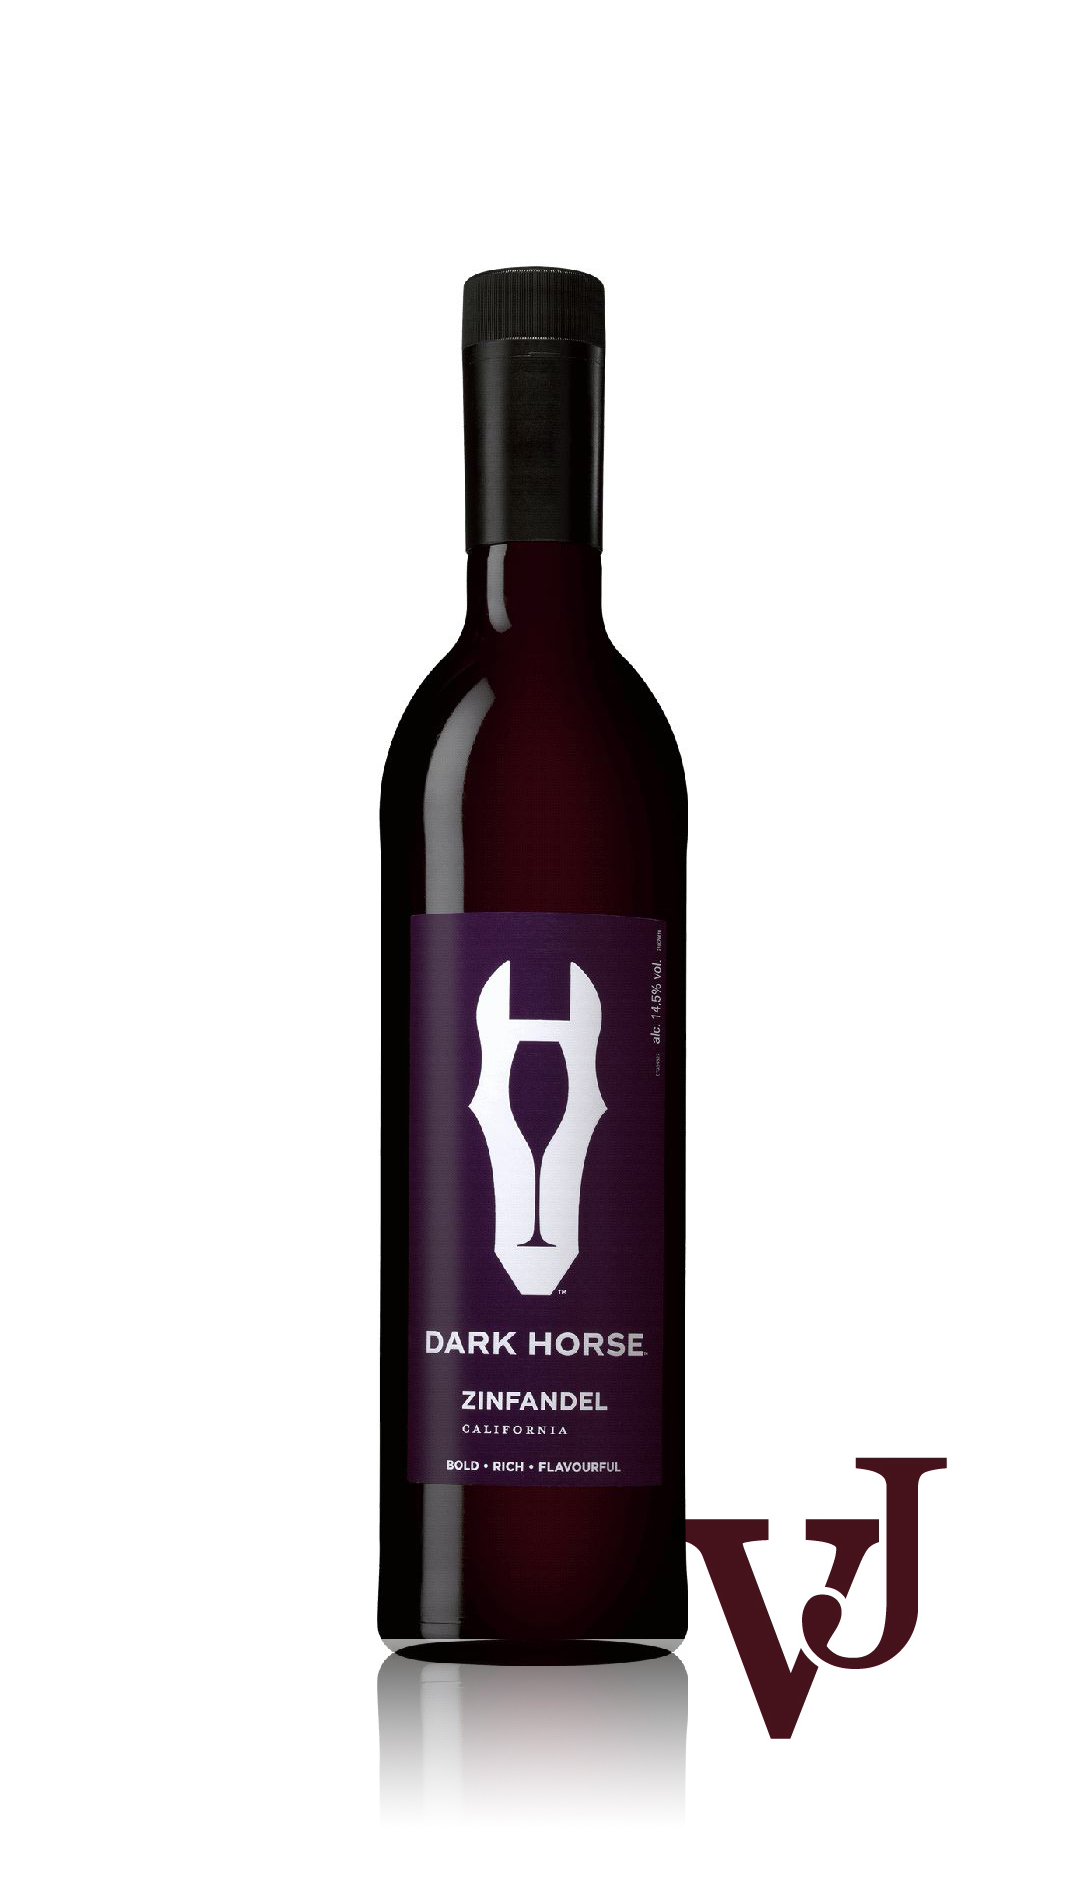 Rött Vin - Dark Horse Zinfandel 2021 artikel nummer 464521 från producenten Dark Horse Wines från USA.